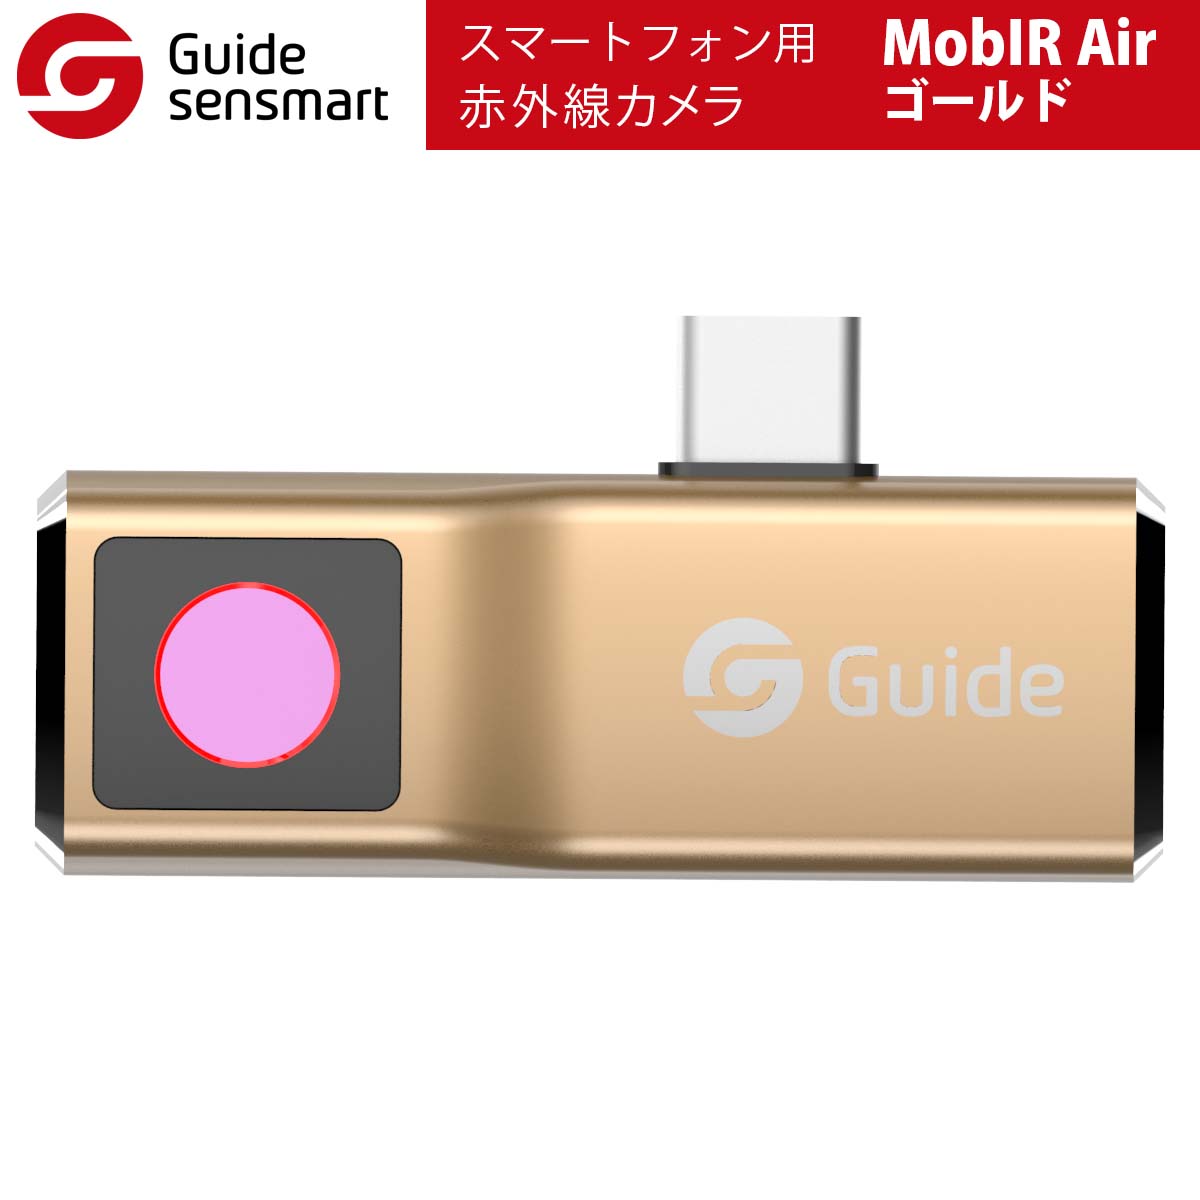 Guide sensmart スマートフォン用赤外線カメラ MobIR Air（ゴールド